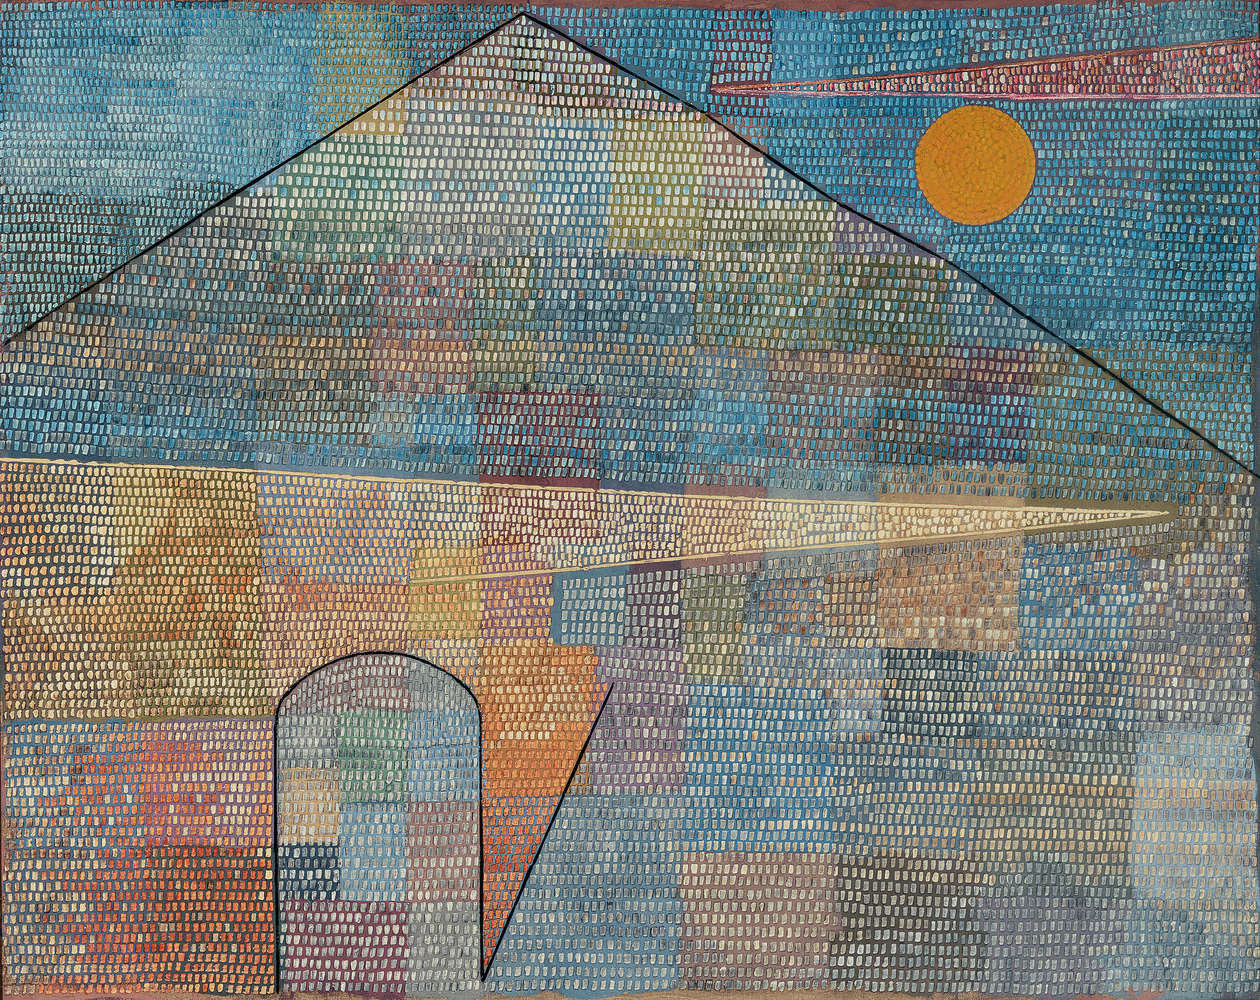             Fotomurali "Ad Parnassum" di Paul Klee
        